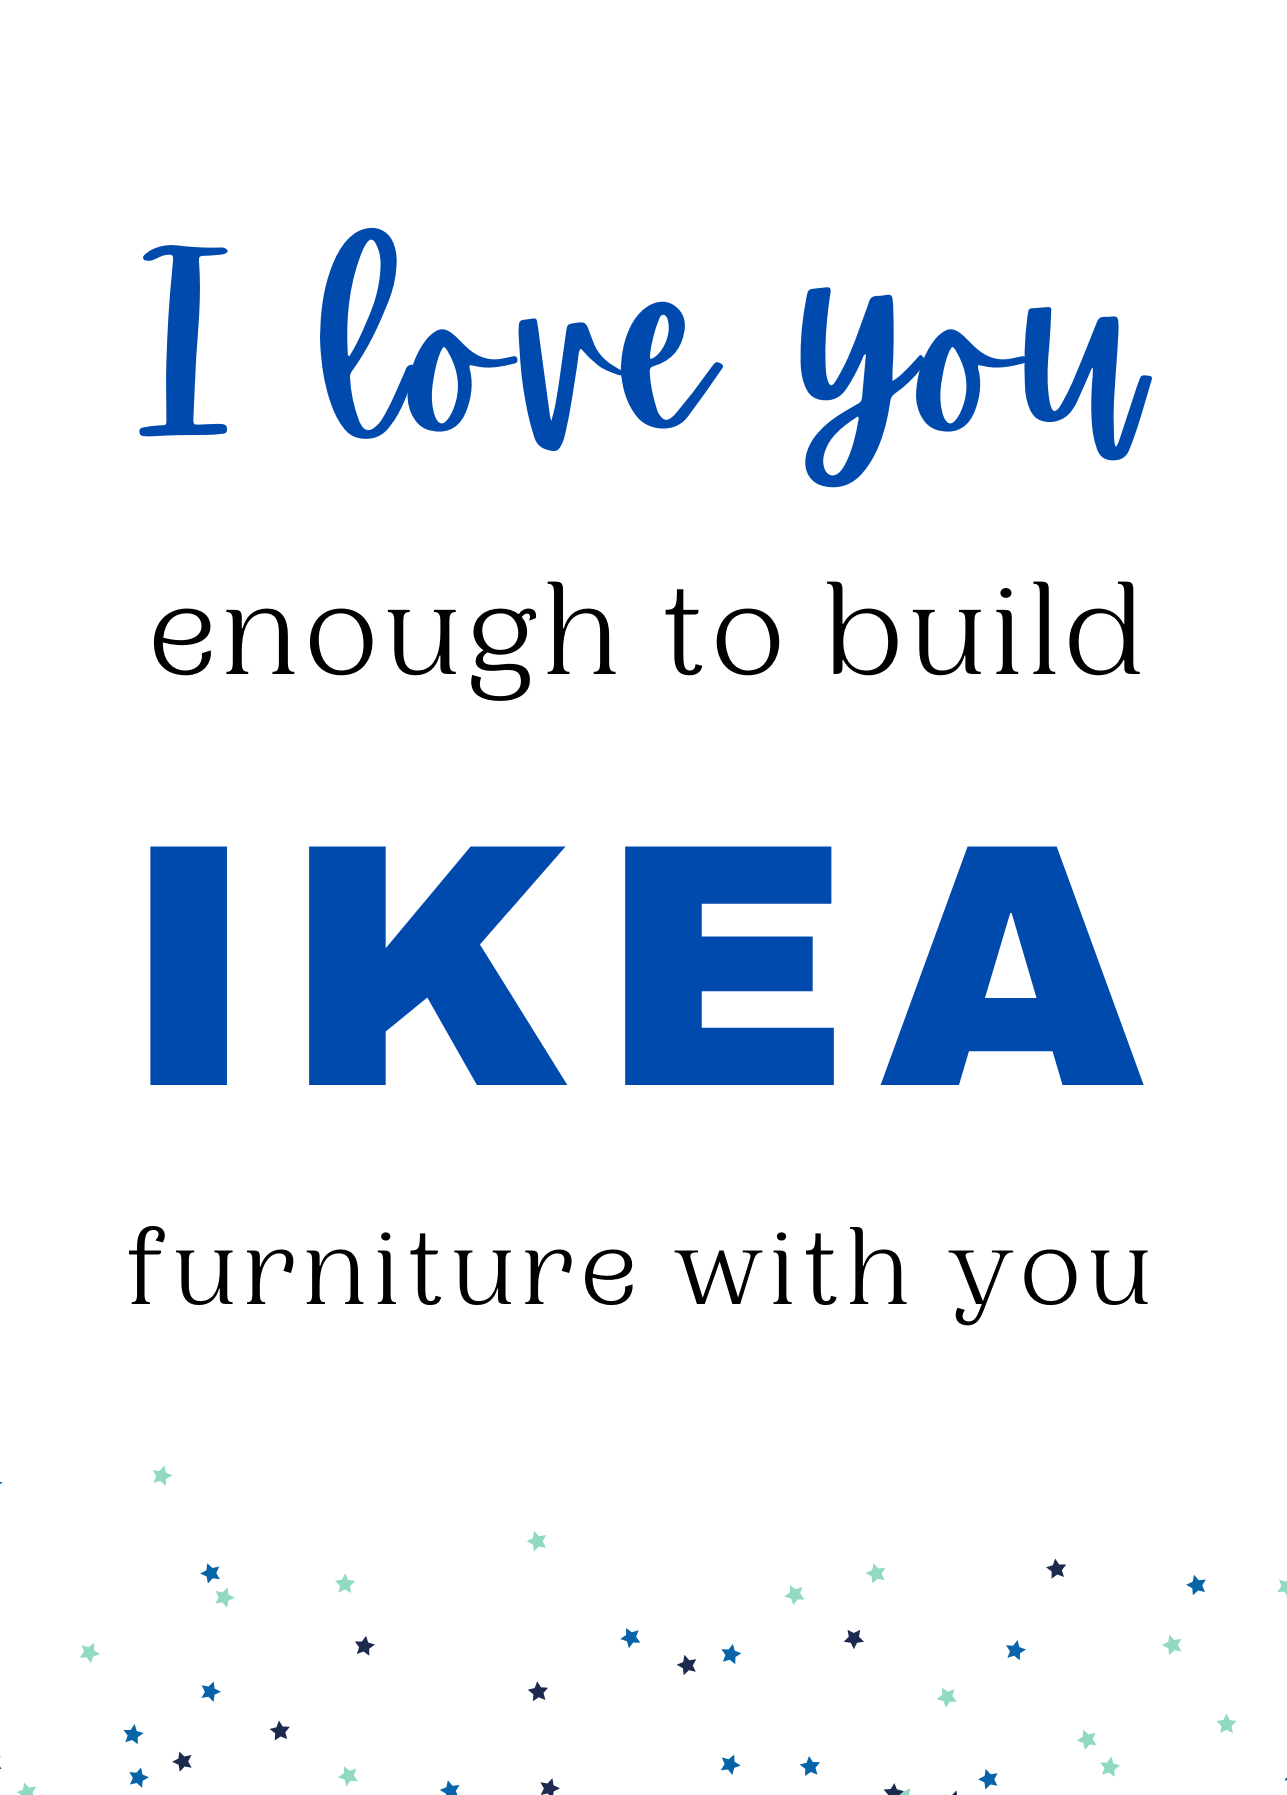 IKEA fun Card